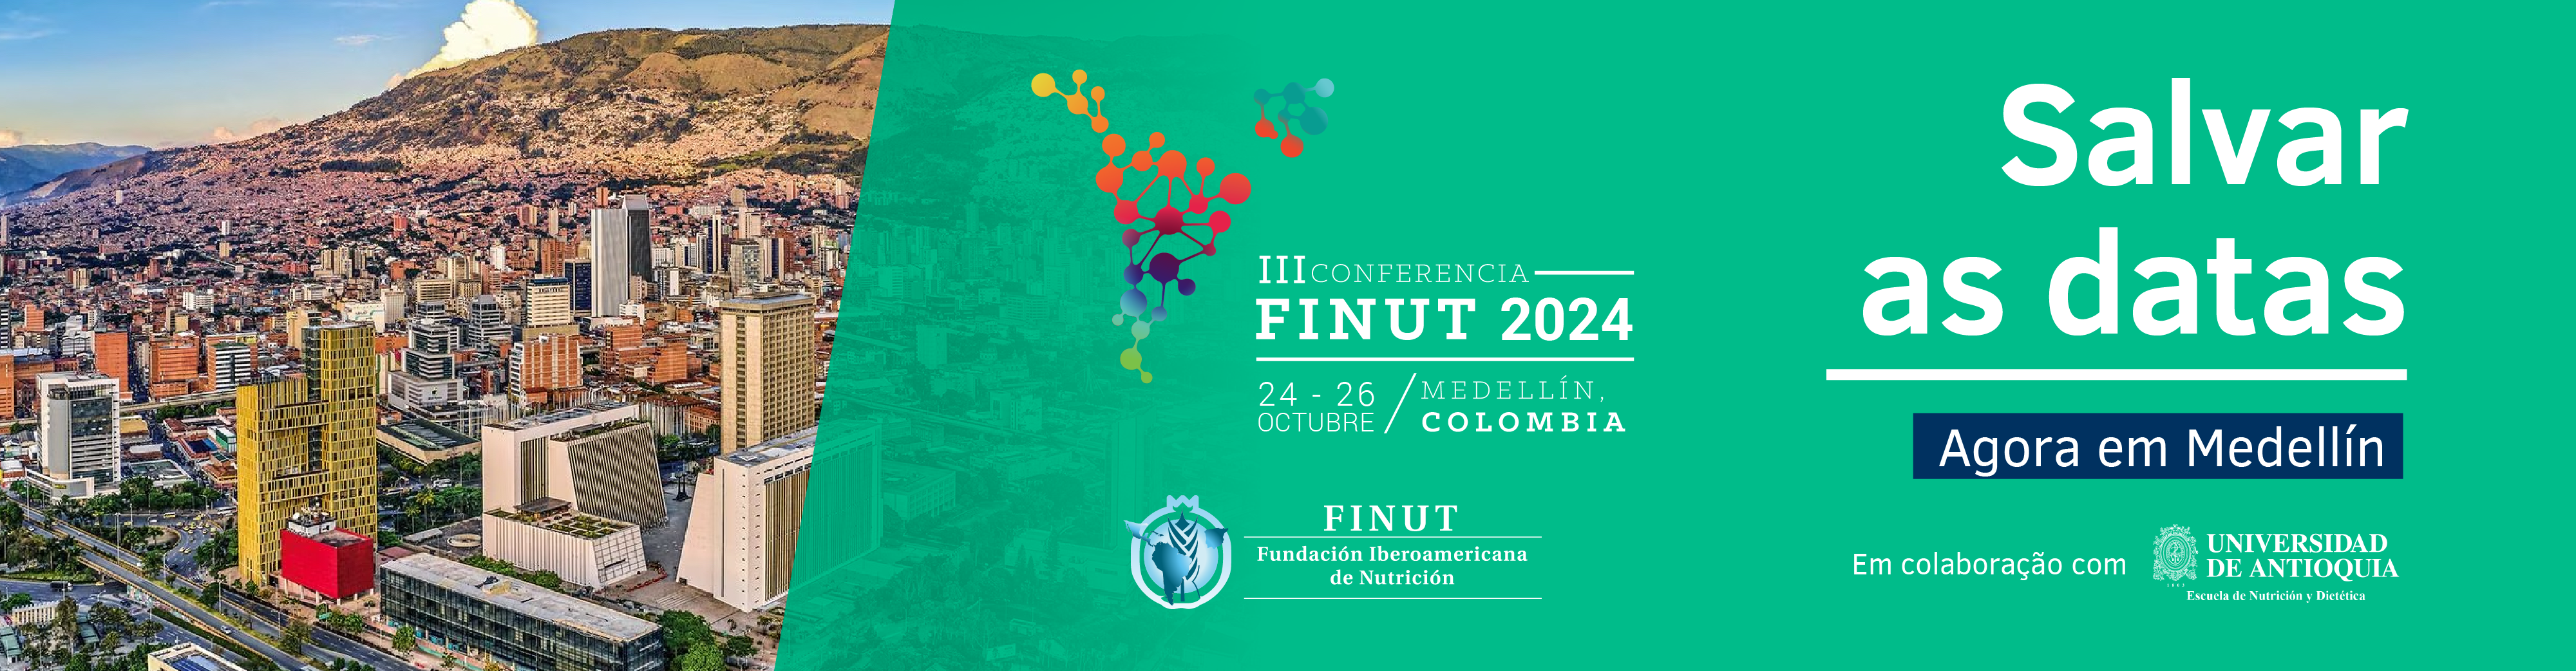 III Conferencia FINUT 2024